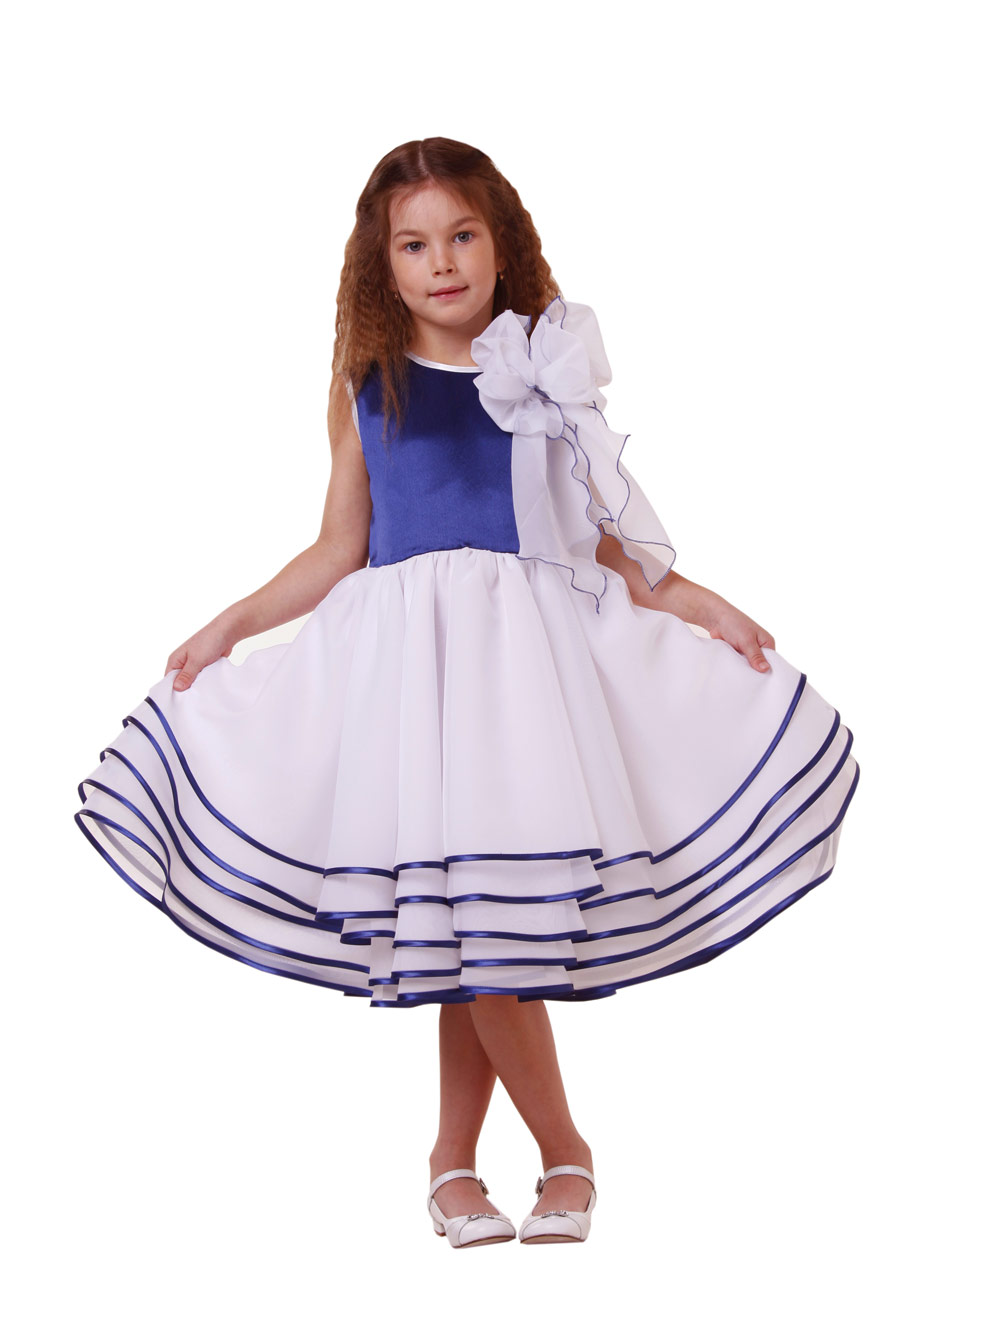 Платье «Афродита» — нарядные детские платья для девочек | Интернет-магазин платьев для девочек «12 кг Счастья»